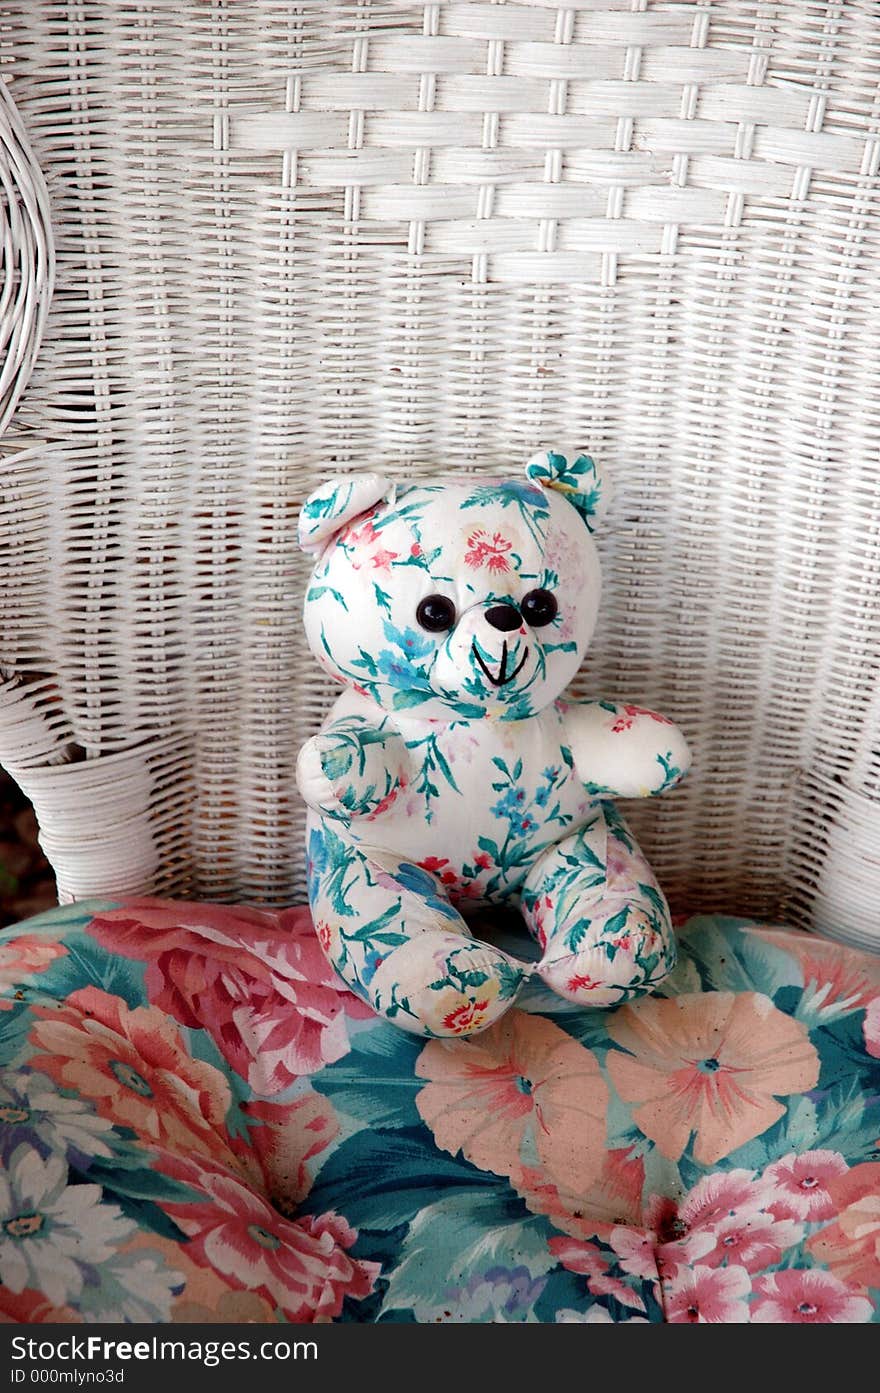 Stuffed bear in wicker chair